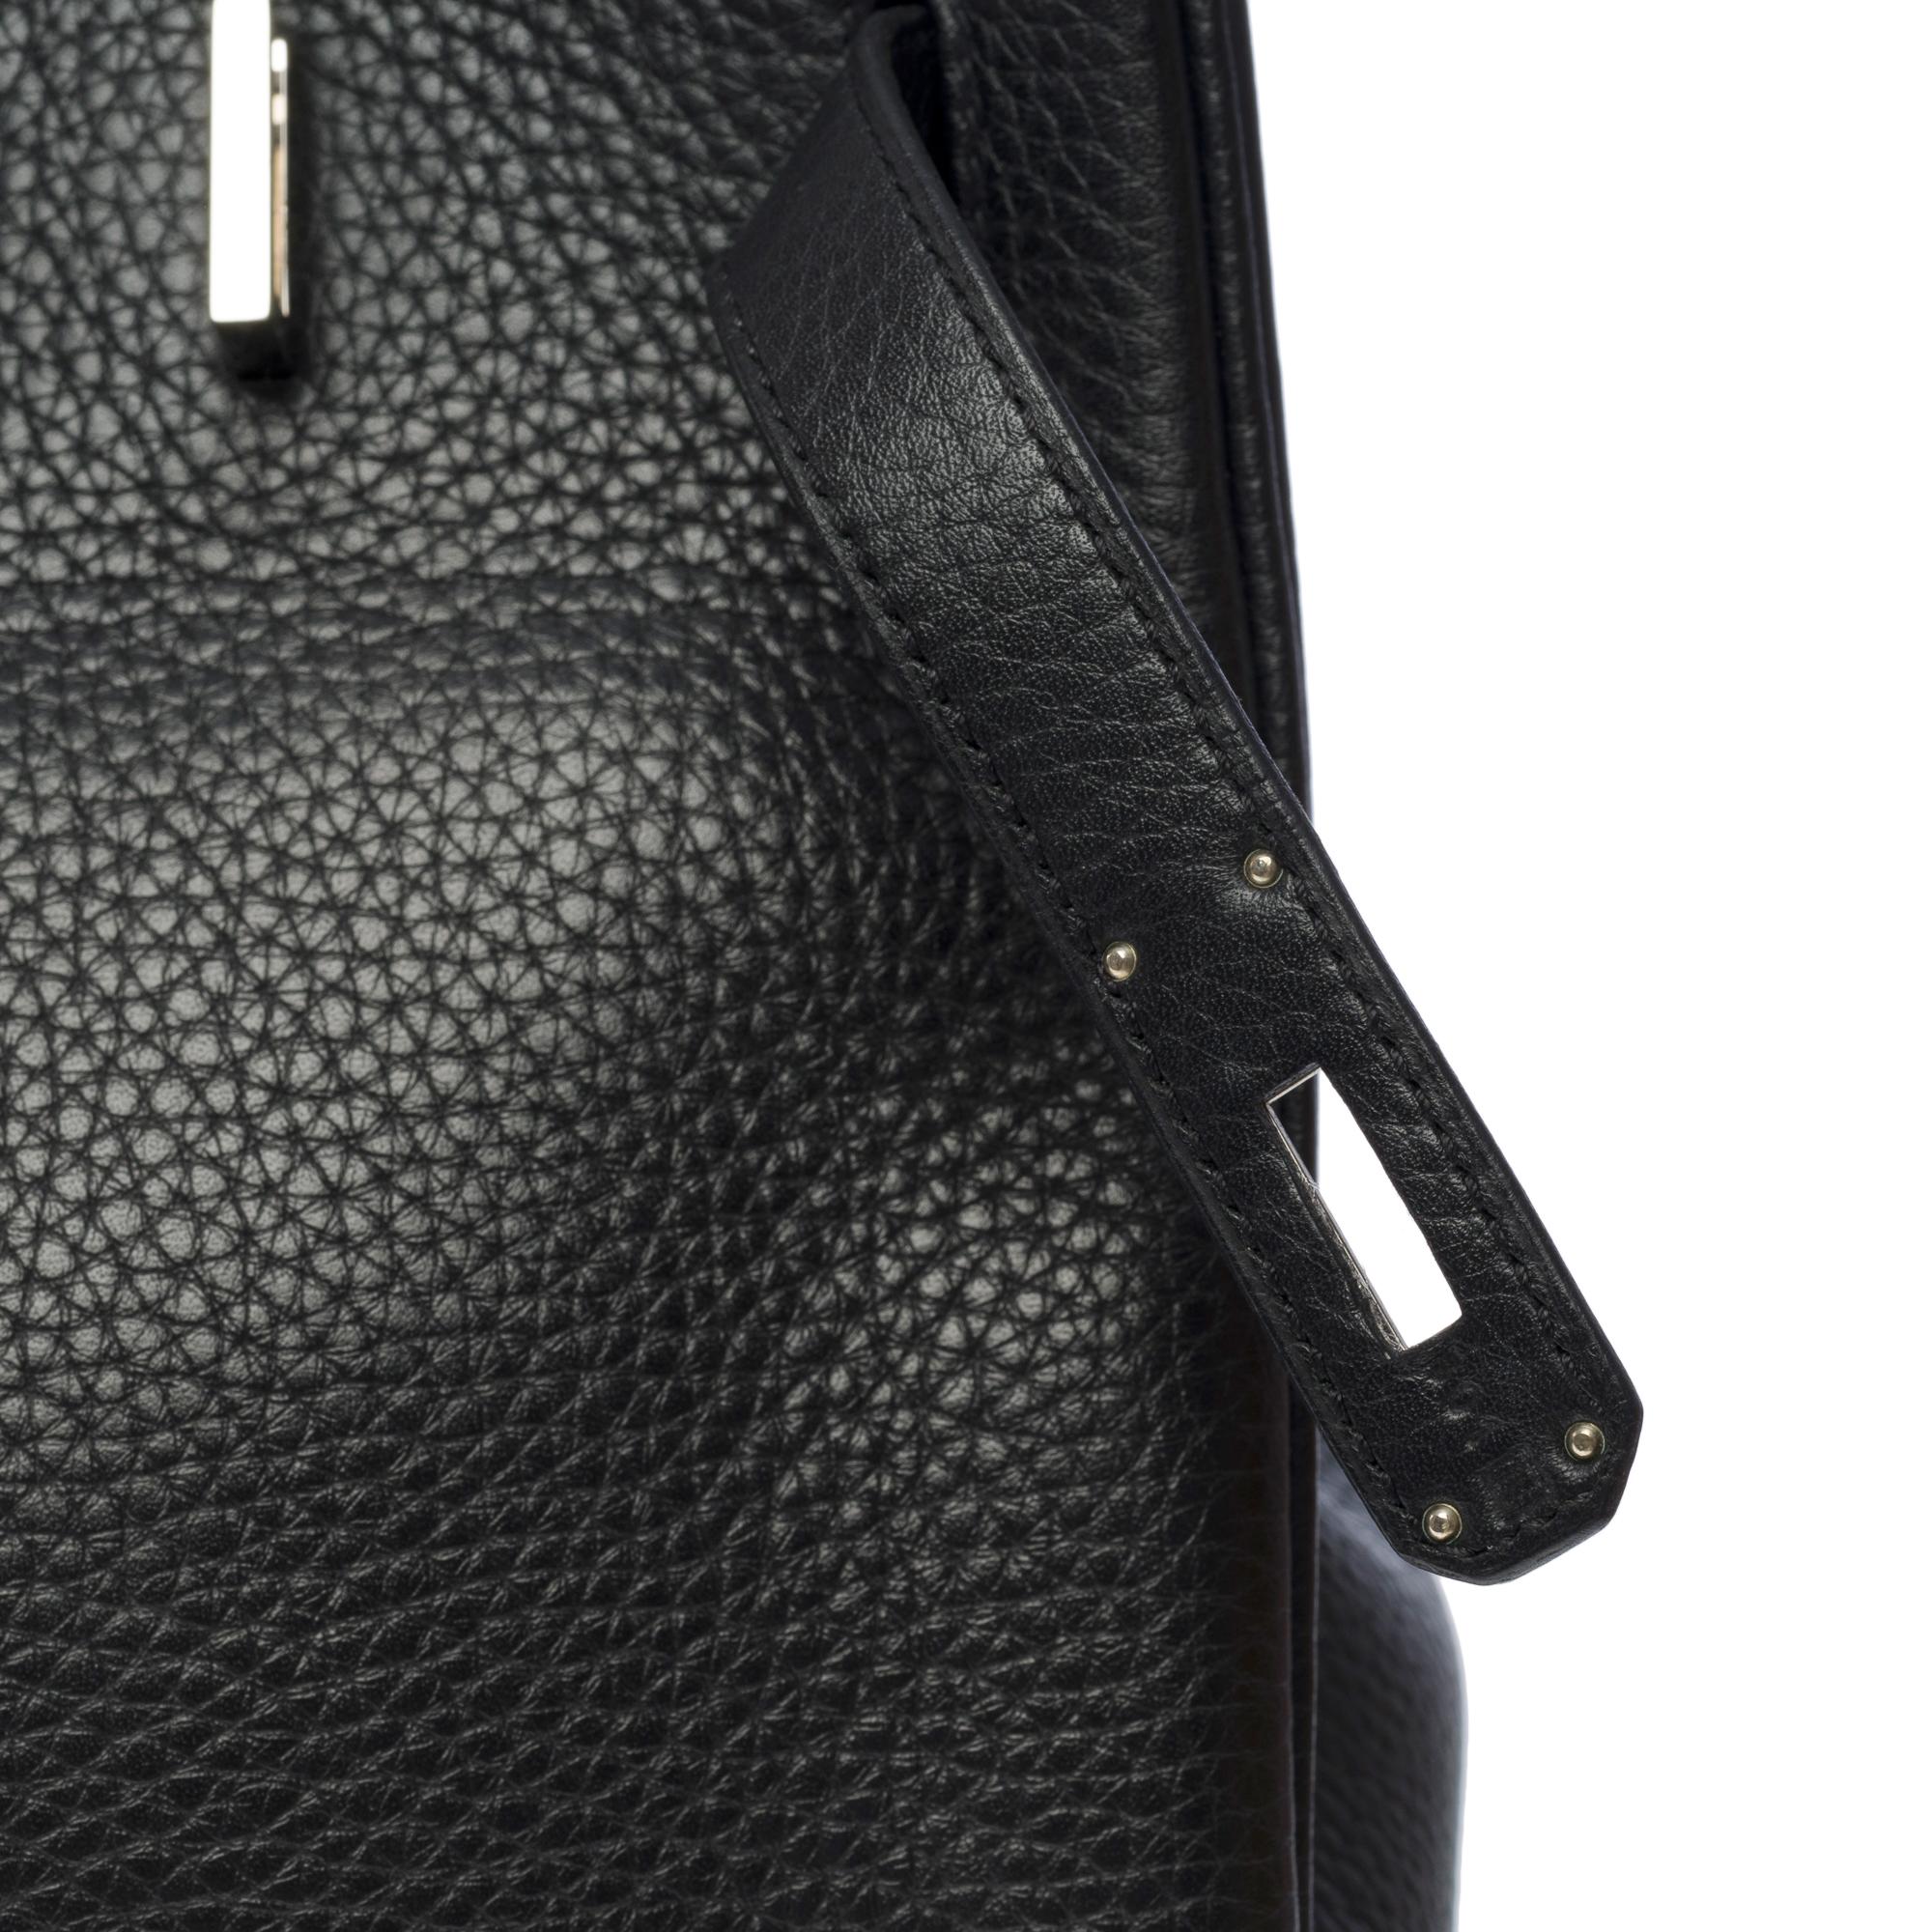 Superbe sac à main Hermès Birkin 35 en cuir Togo noir, SHW 3